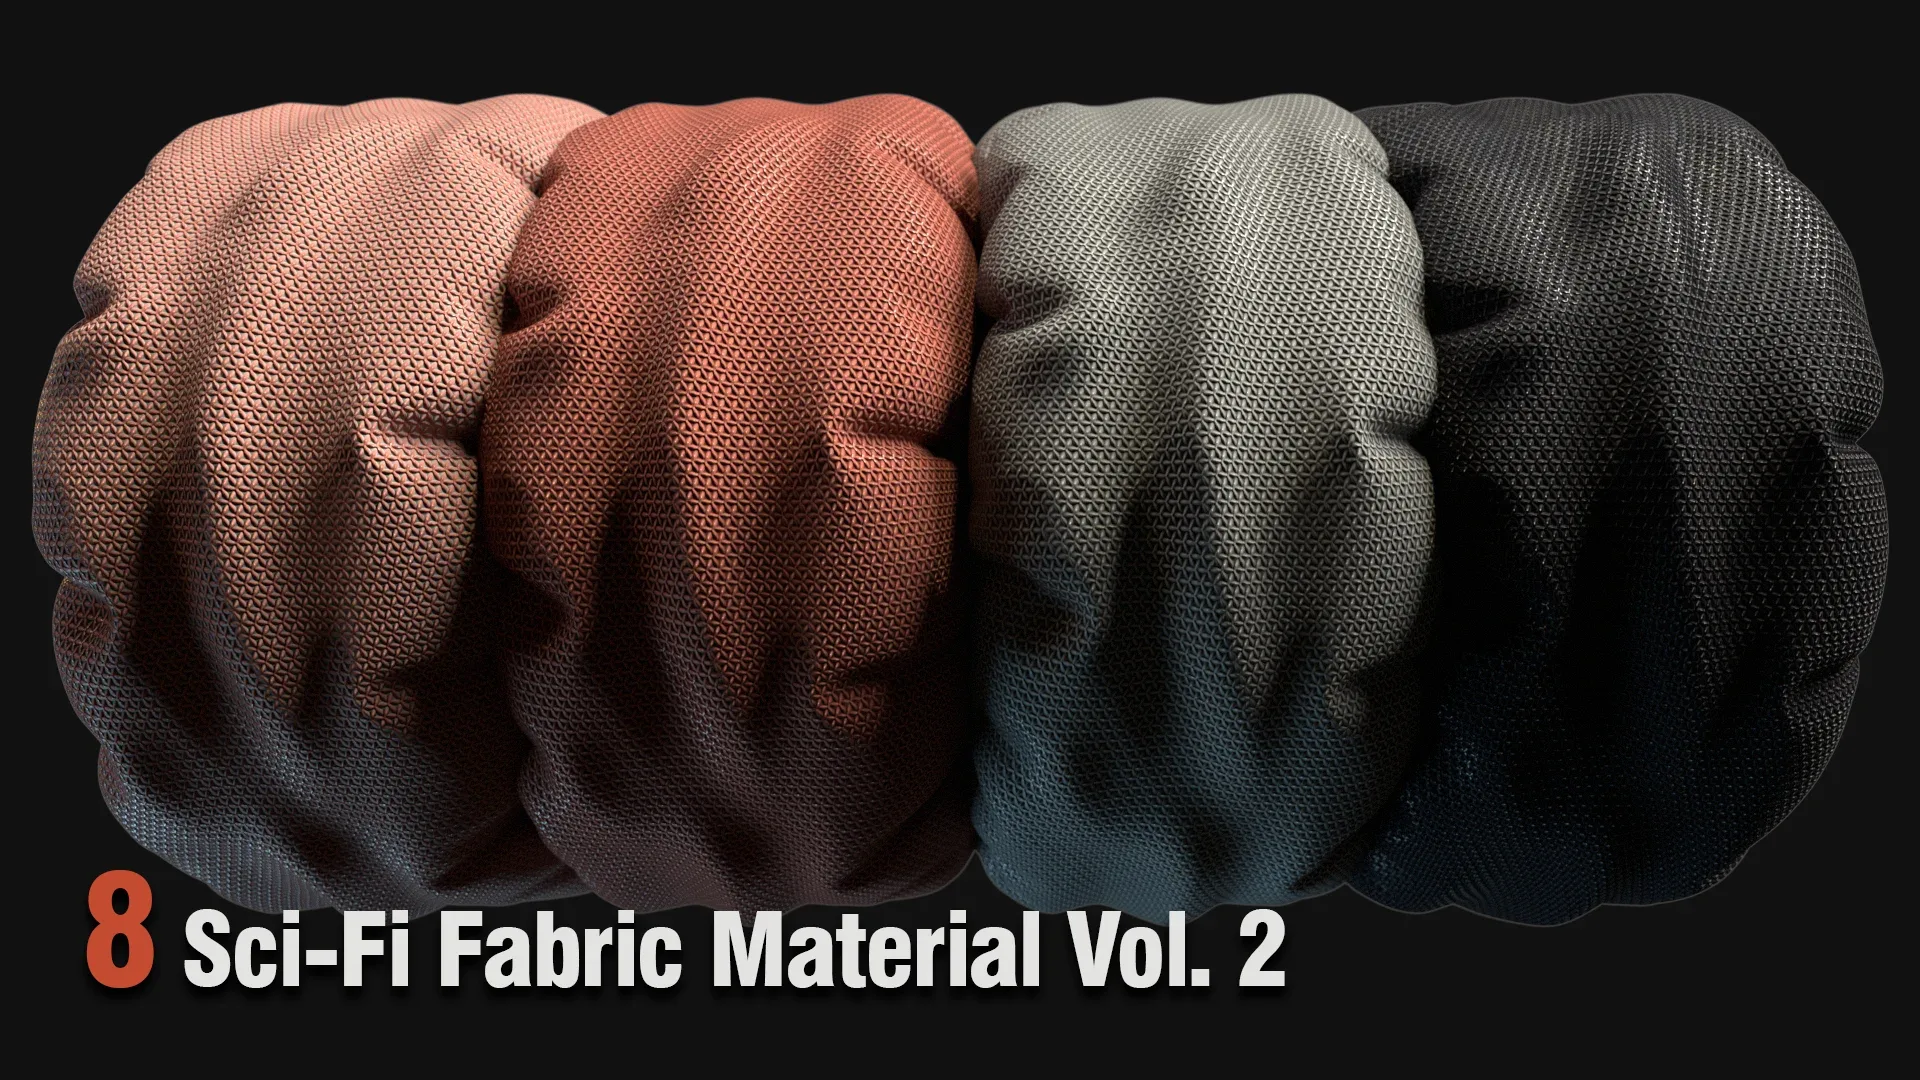 8 Sci-Fi Fabric Material Vol. 2